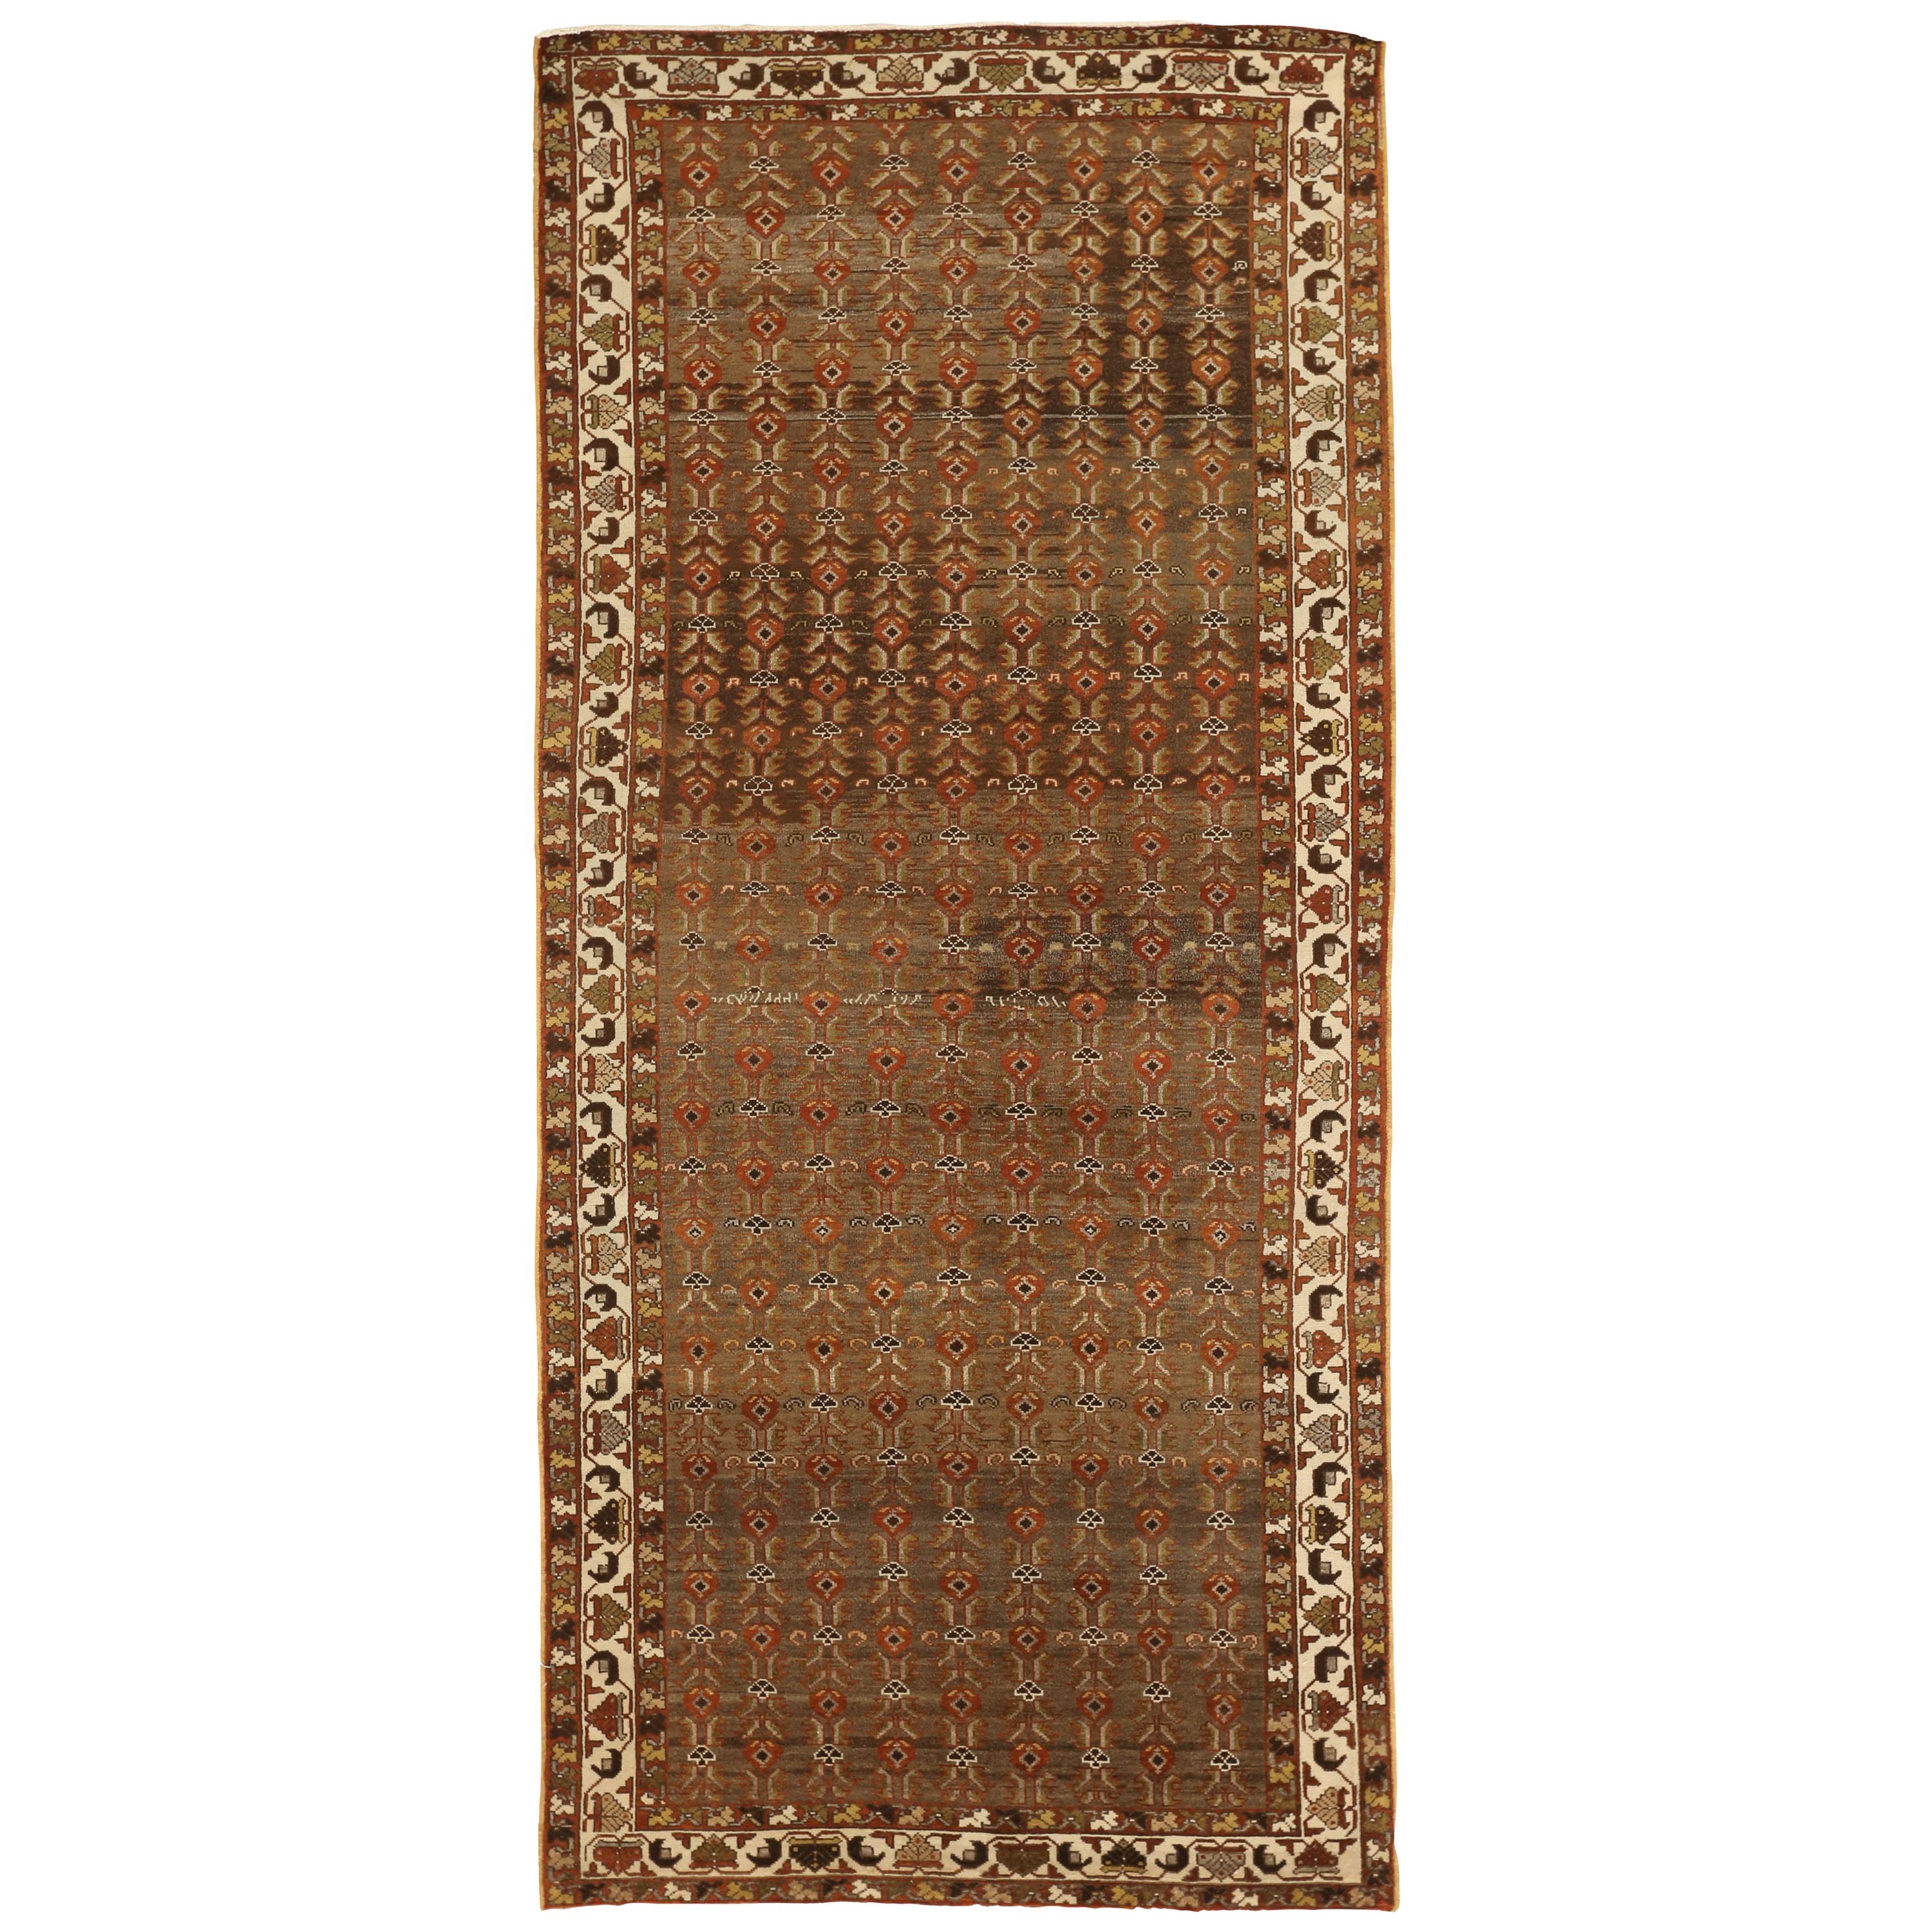 Antiker persischer Saveh-Teppich mit rotem und braunem Blumenfeld, antik